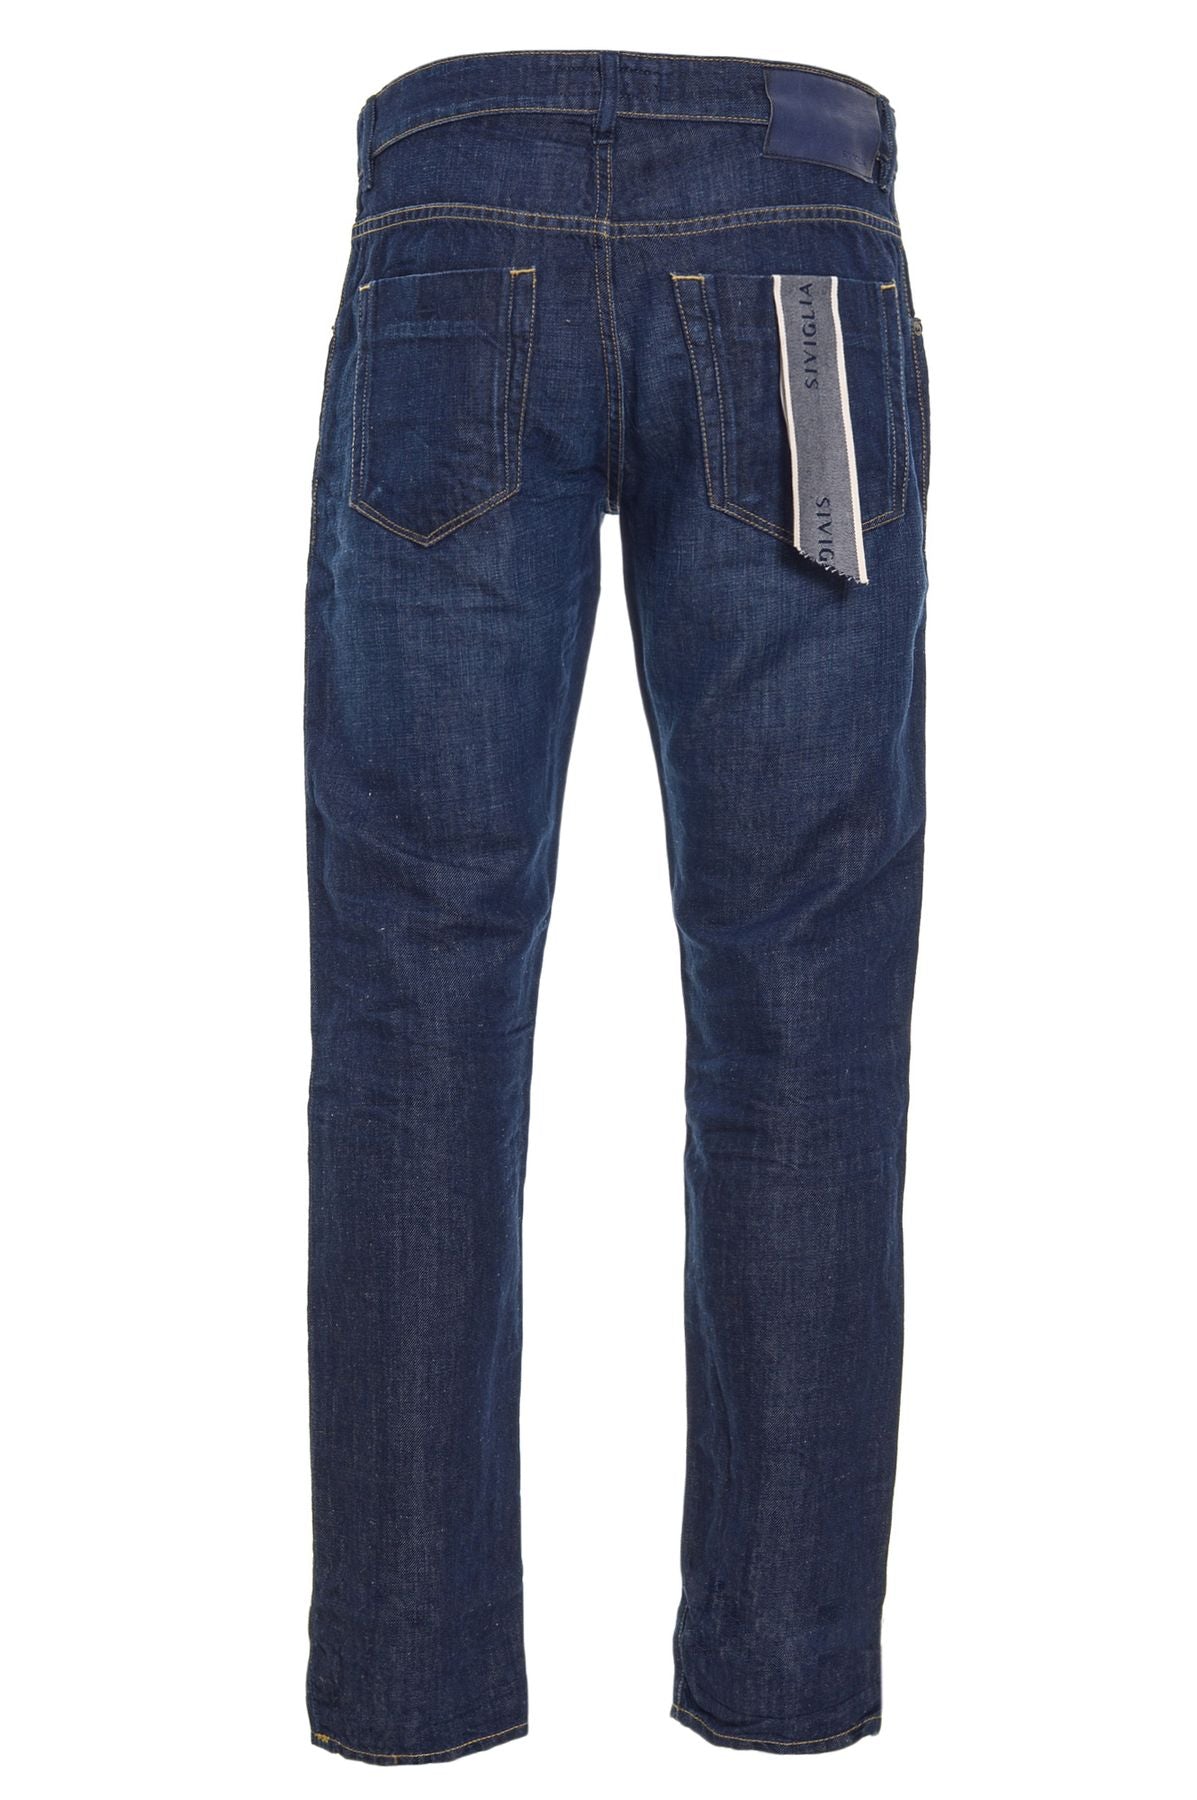 SIVIGLIA Spring/Summer Cotton Jeans